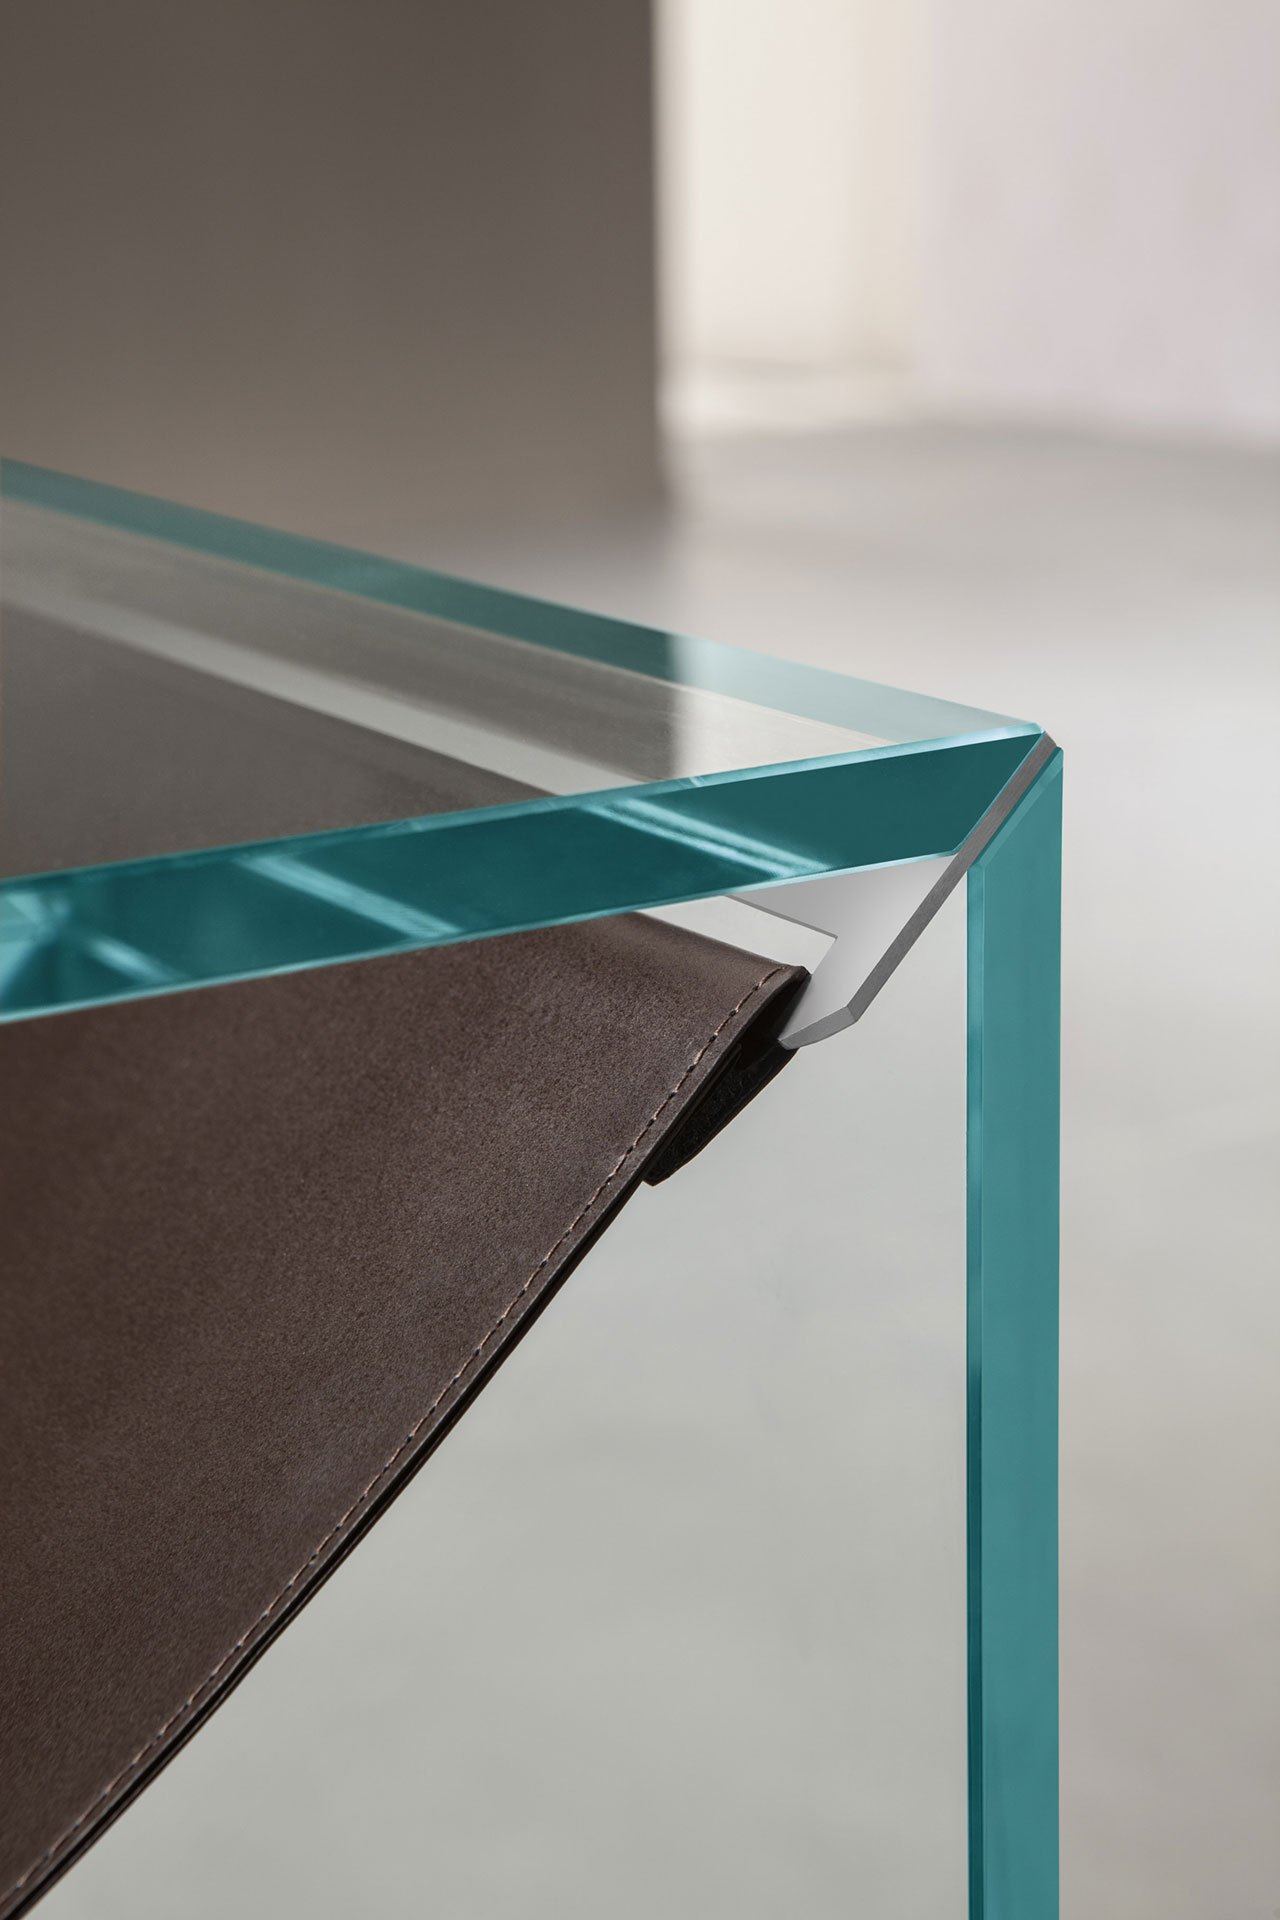 Tonelli, 'Amaca' coffe table, 2018, designed by Calvi Brambilla. Photo © Calvi Brambilla.